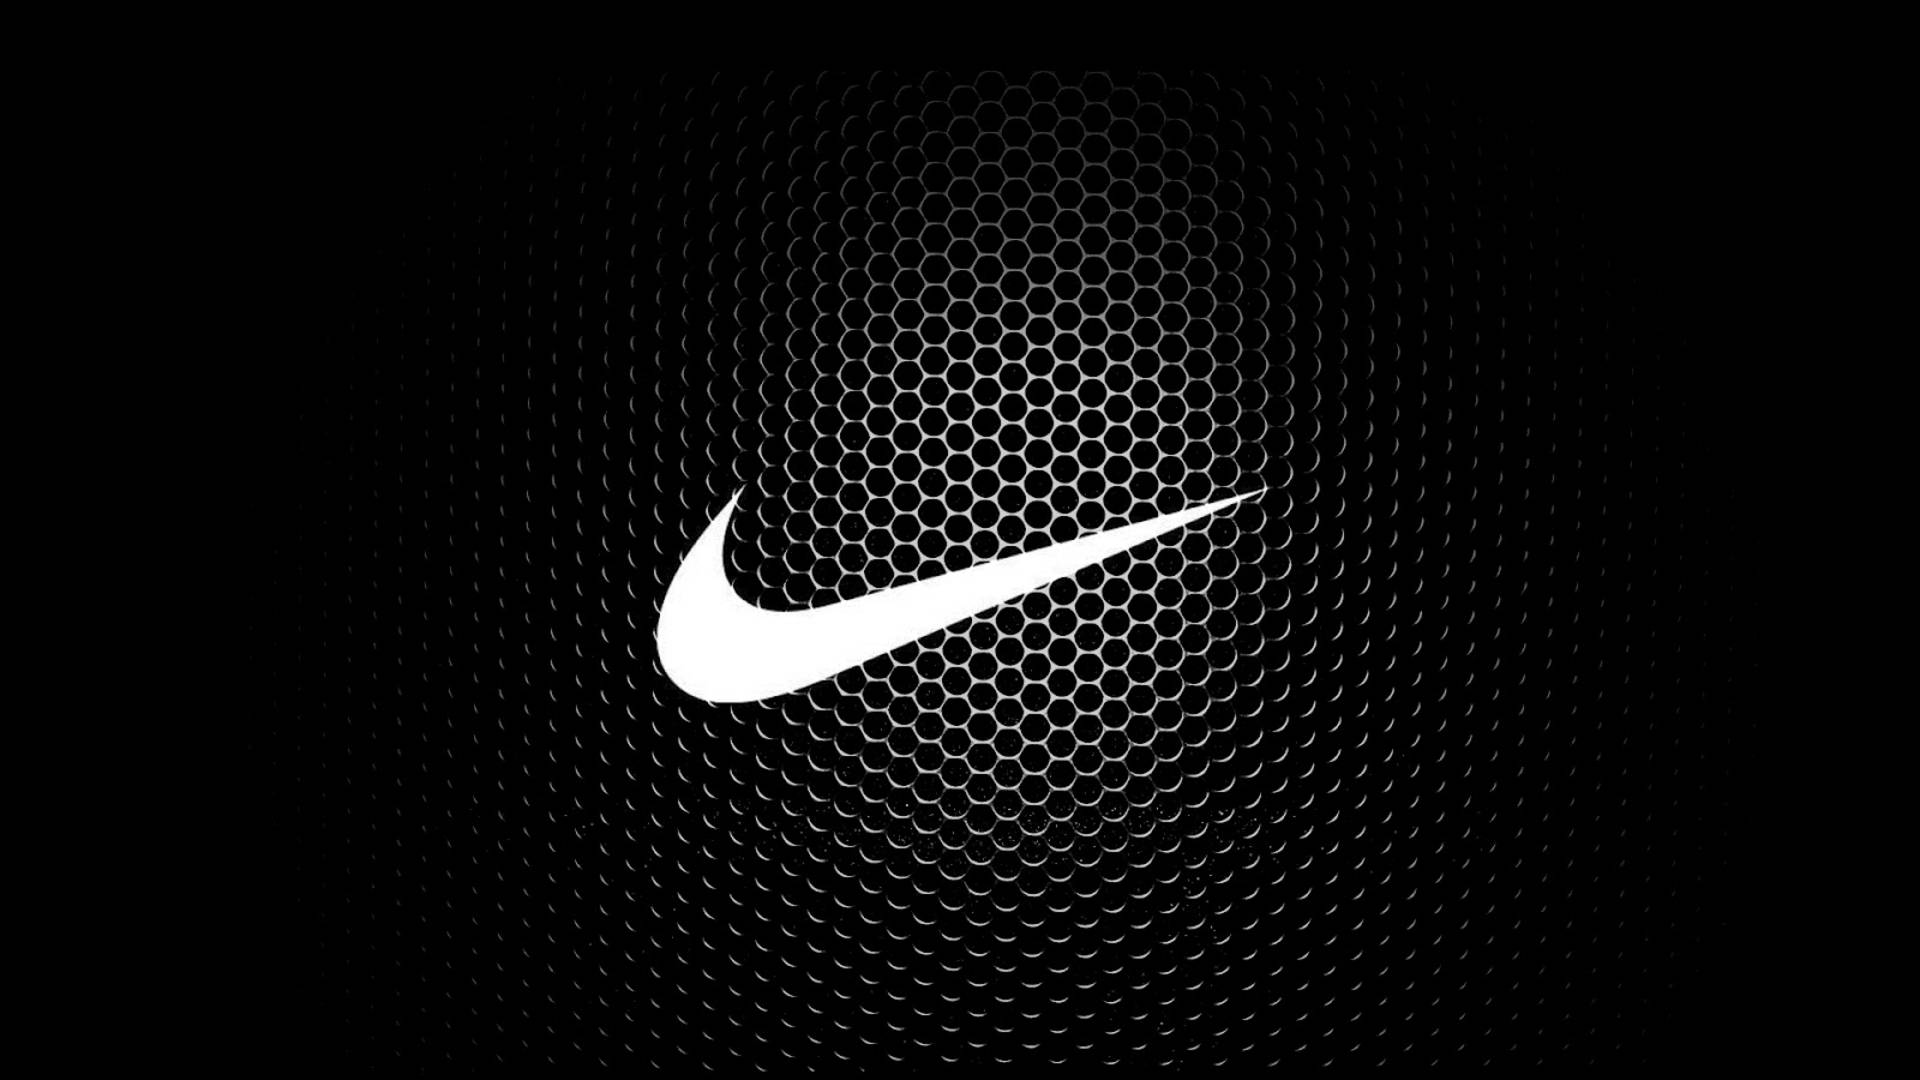 Nike Images download best HD at digitalimagemakerworldcom